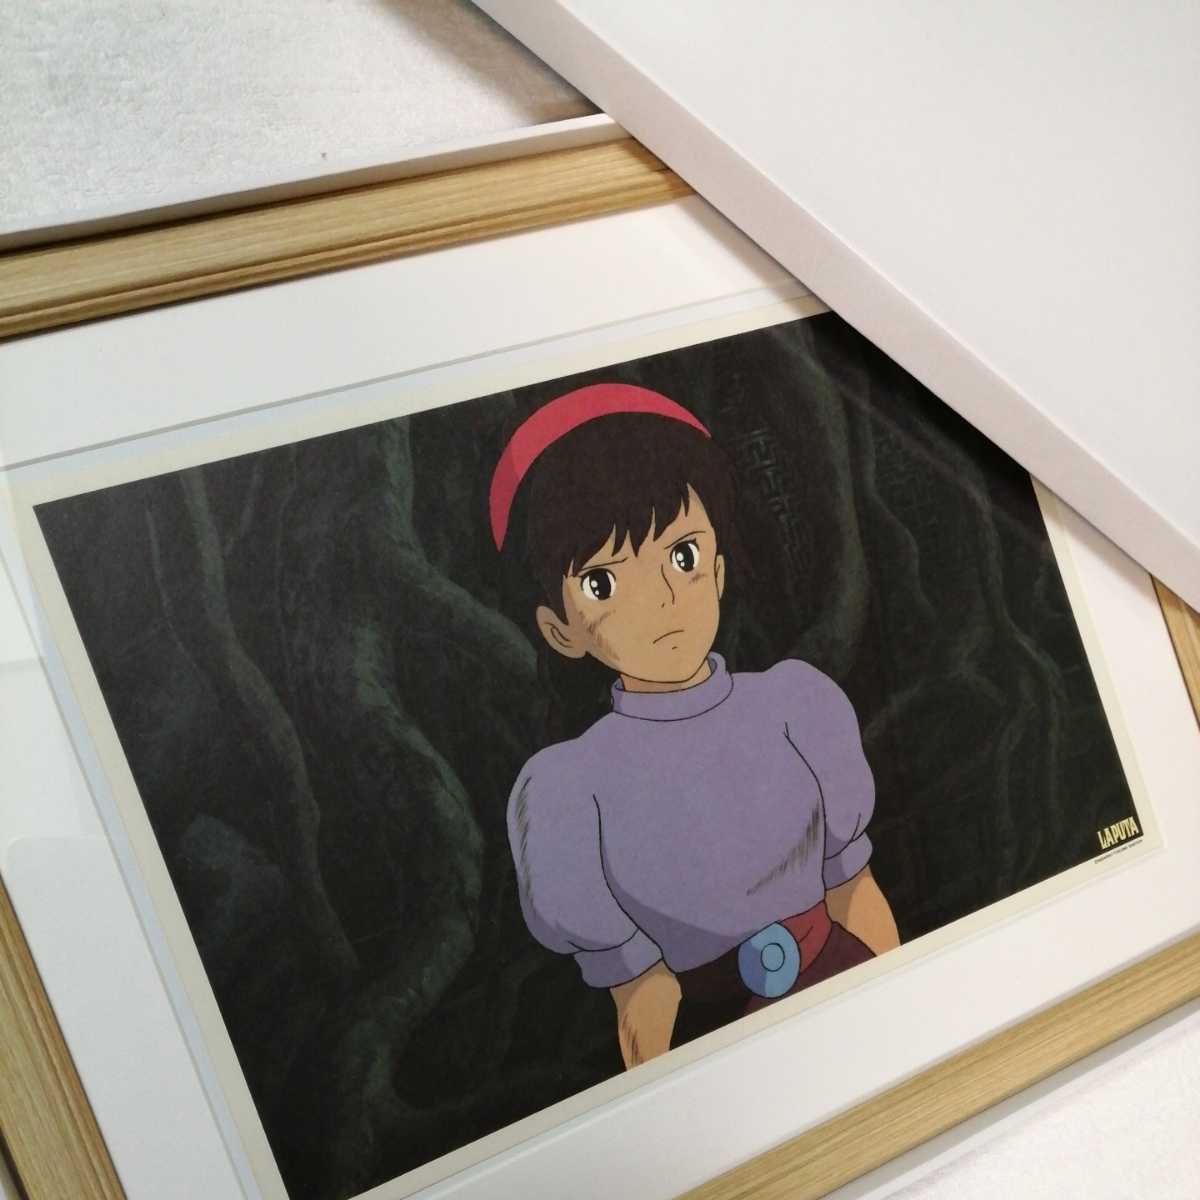 Vor mehr als 30 Jahren [Damals] Studio Ghibli: Castle in the Sky [Gerahmter Artikel] Poster, Wandbehanggemälde, Originalreproduktion, Inspektion) Zelle, Postkarte, Hayao Miyazaki g, Comics, Anime-Waren, Andere